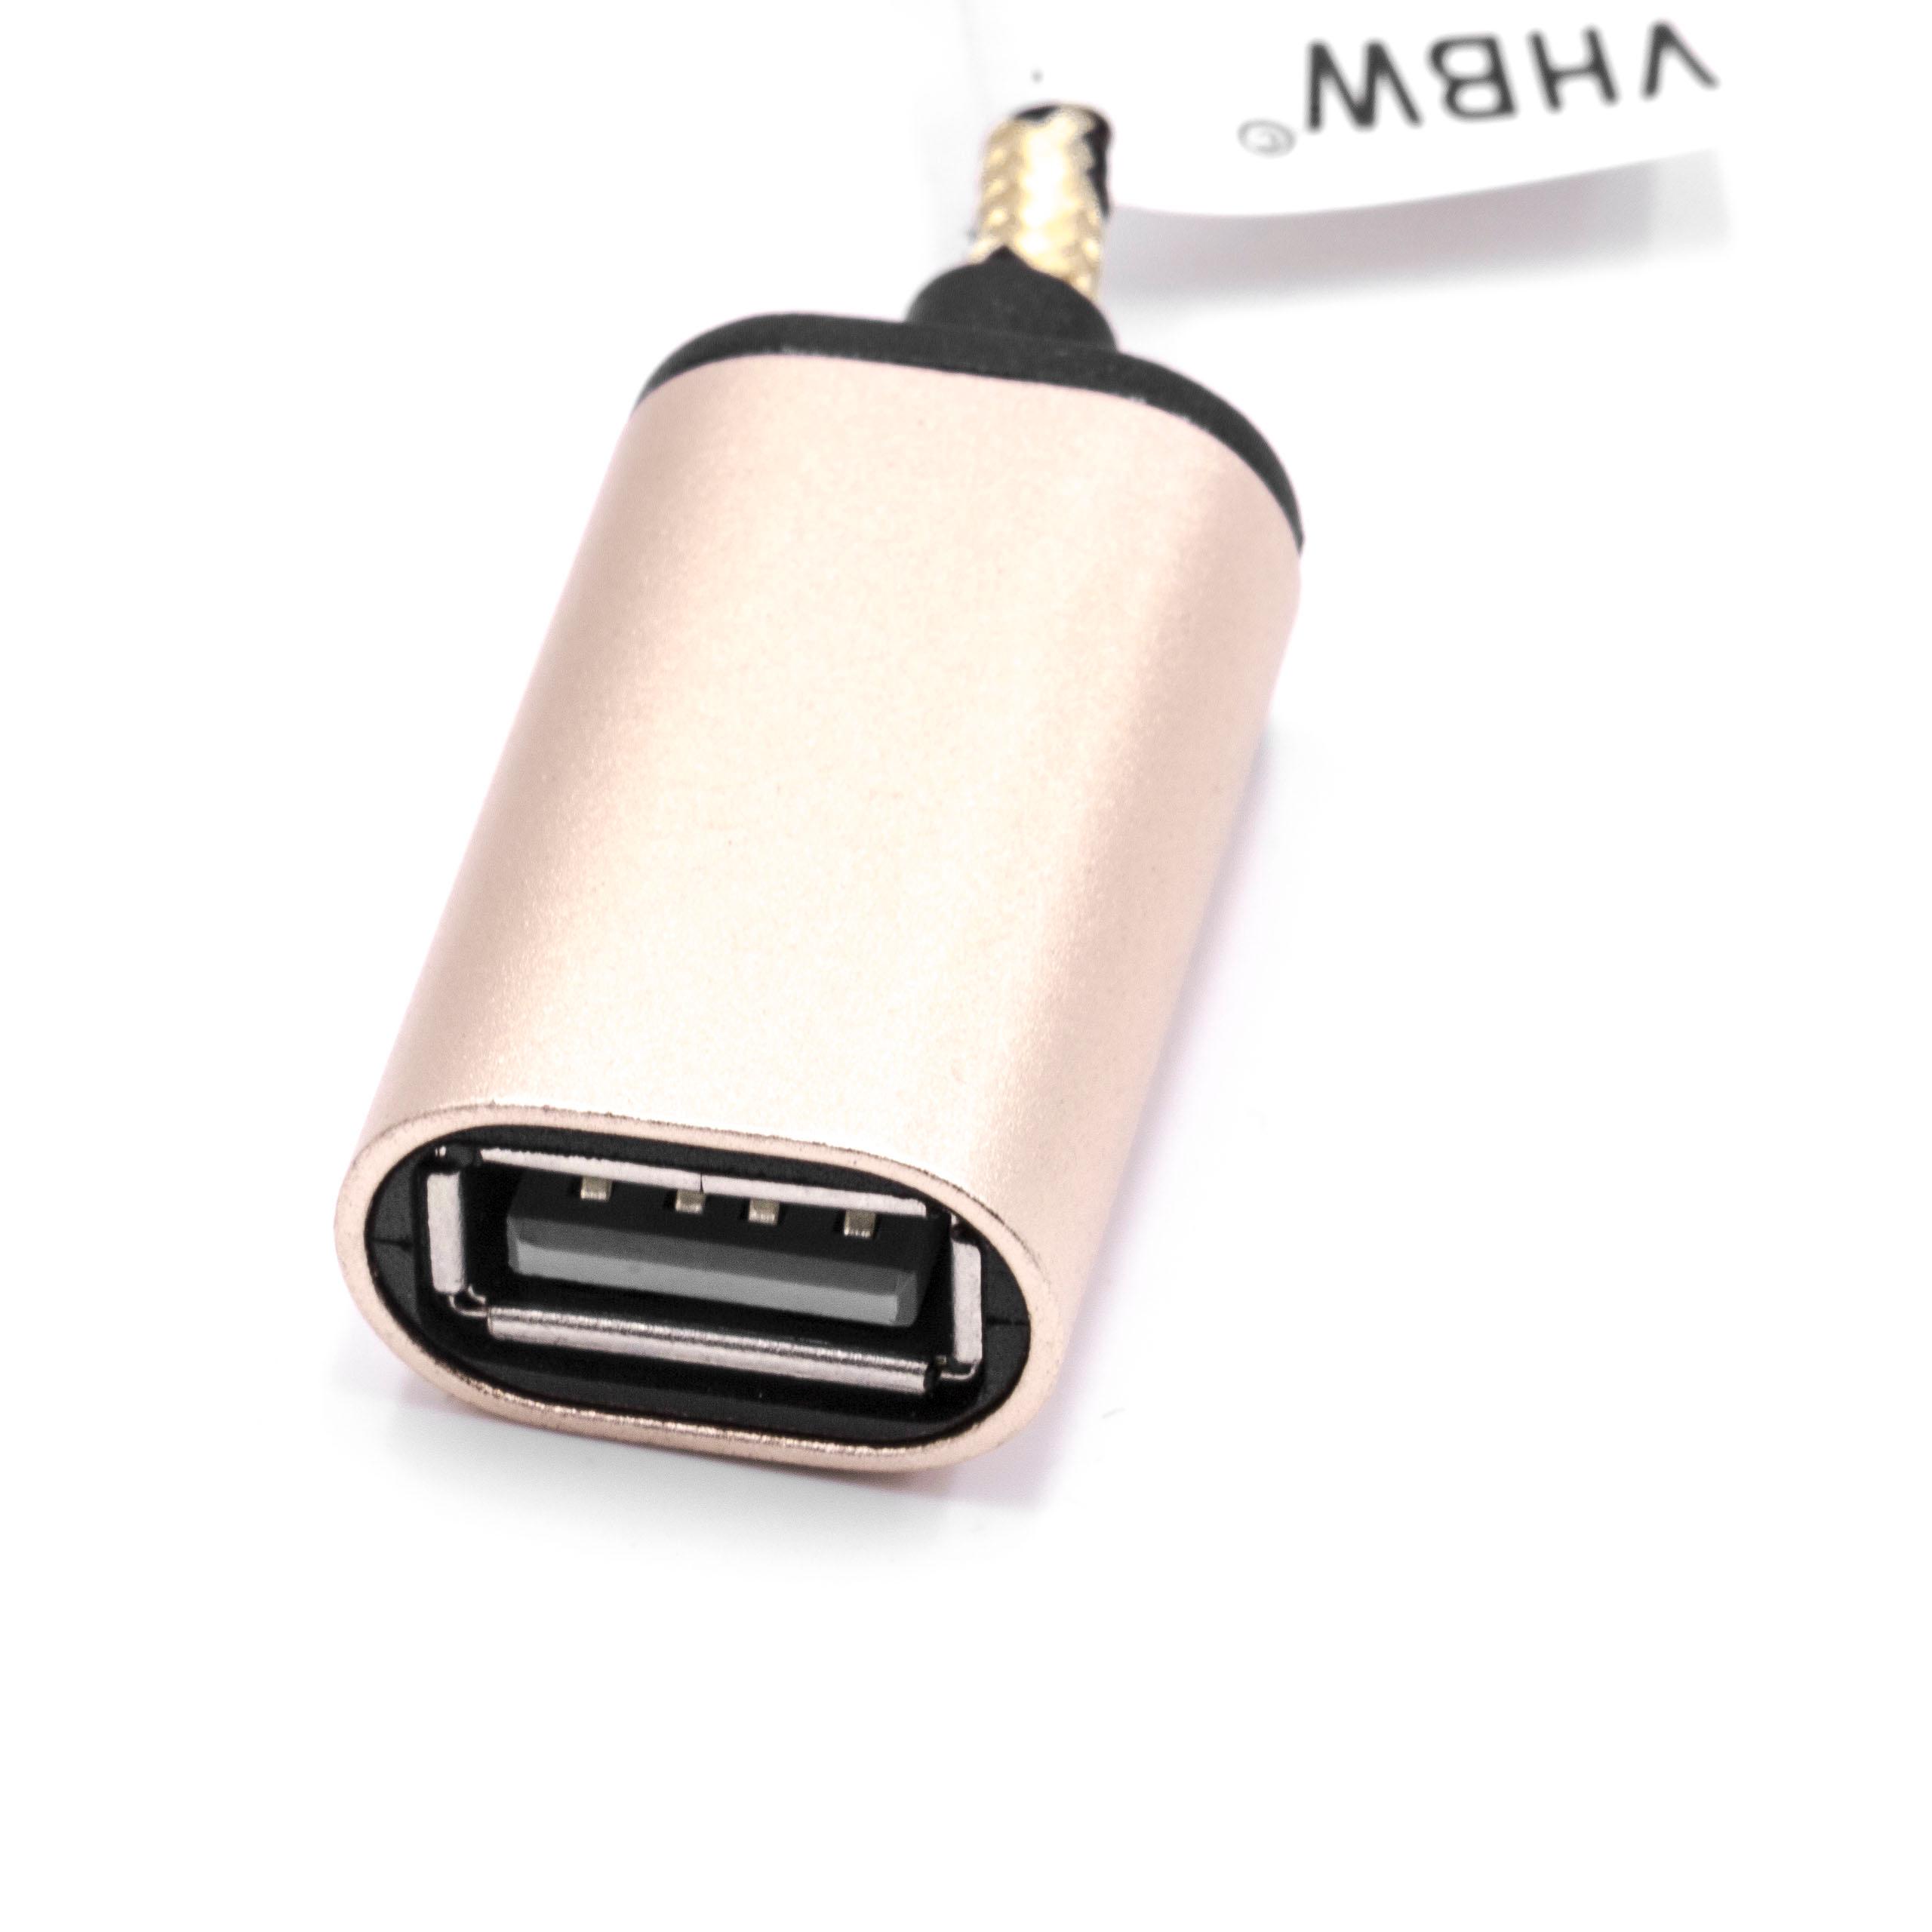 Adapteur OTG prise femelle USB 3.1 type C à connecteur USB 2.0 A pour smartphone, tablette, ordinateur portabl